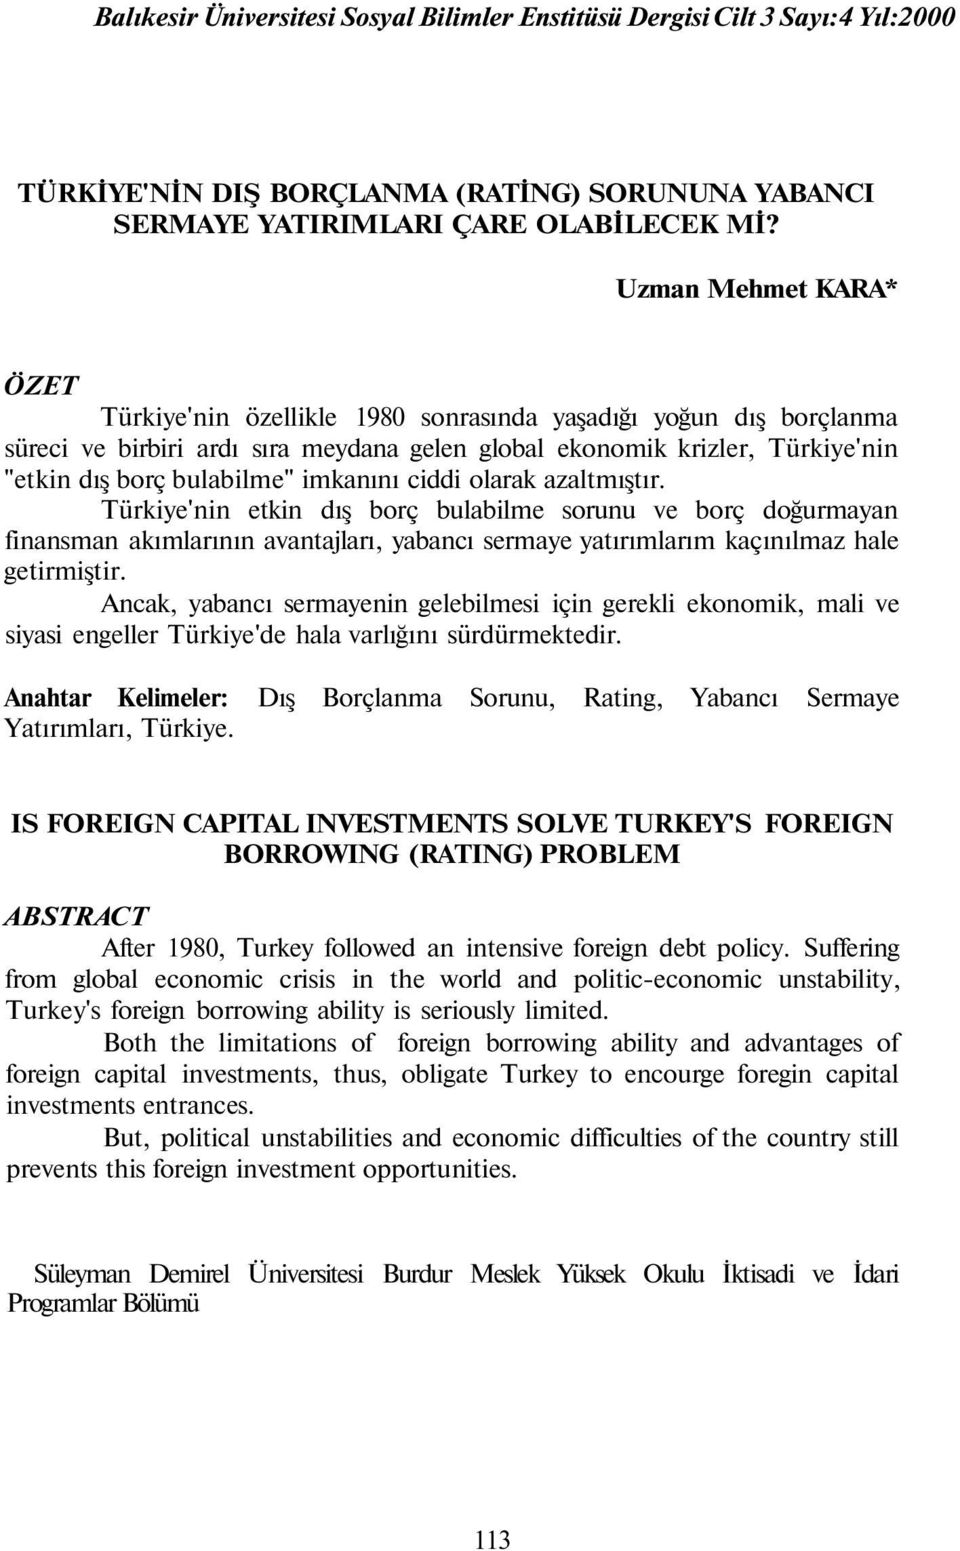 imkanını ciddi olarak azaltmıştır. Türkiye'nin etkin dış borç bulabilme sorunu ve borç doğurmayan finansman akımlarının avantajları, yabancı sermaye yatırımlarım kaçınılmaz hale getirmiştir.